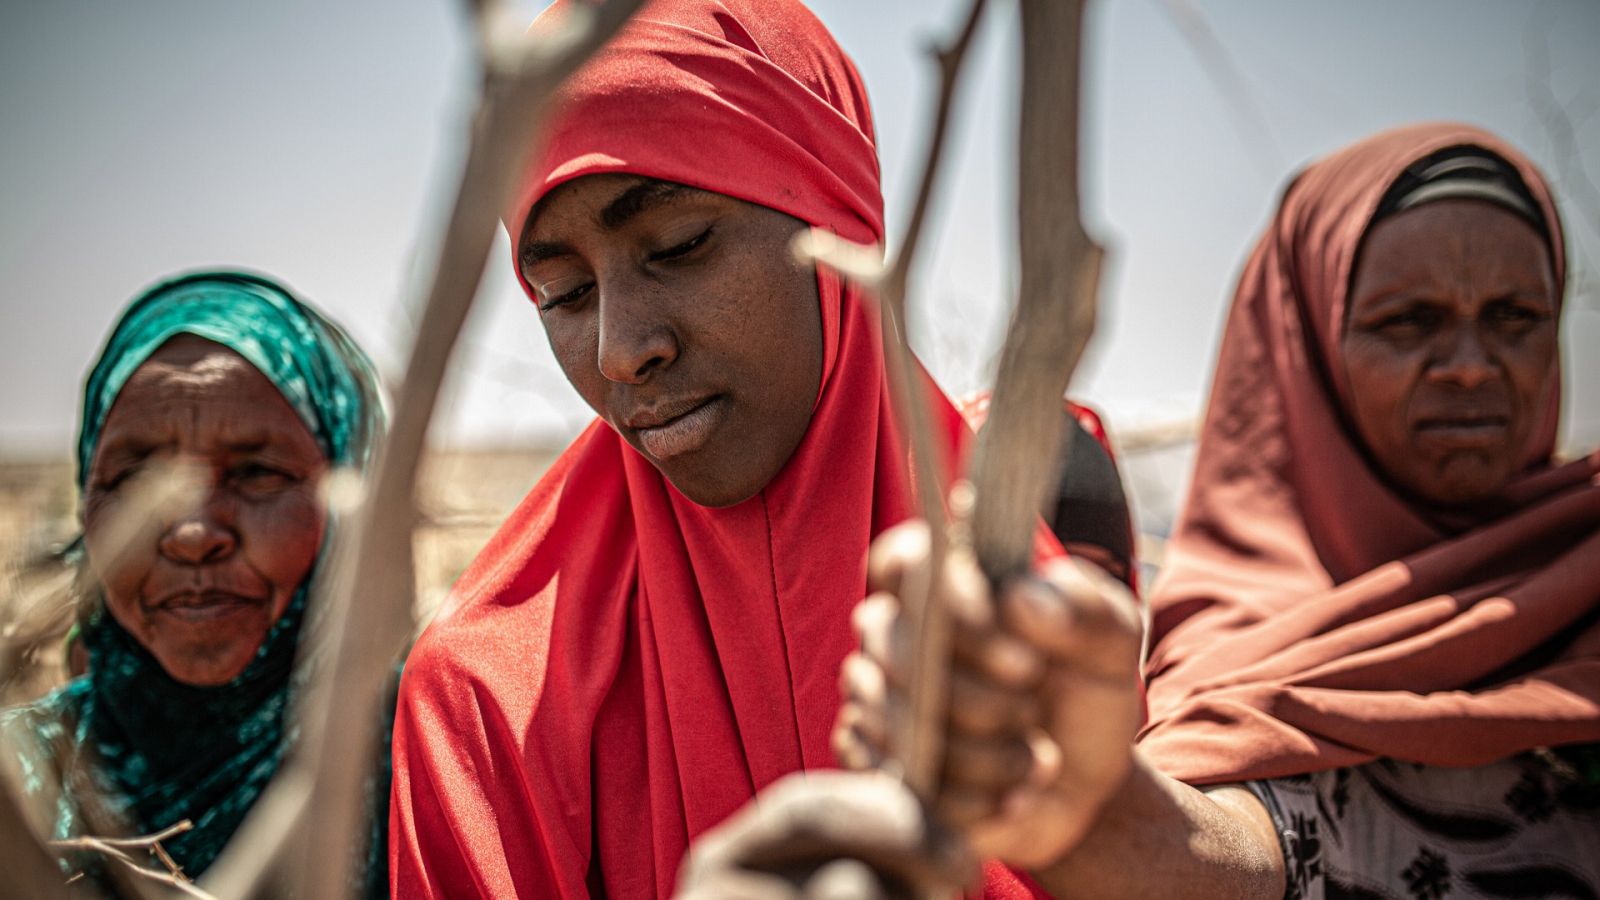 Somalia, epicentro del hambre: "El sonido más insoportable es el llanto de una mujer que acaba de perder a un hijo"